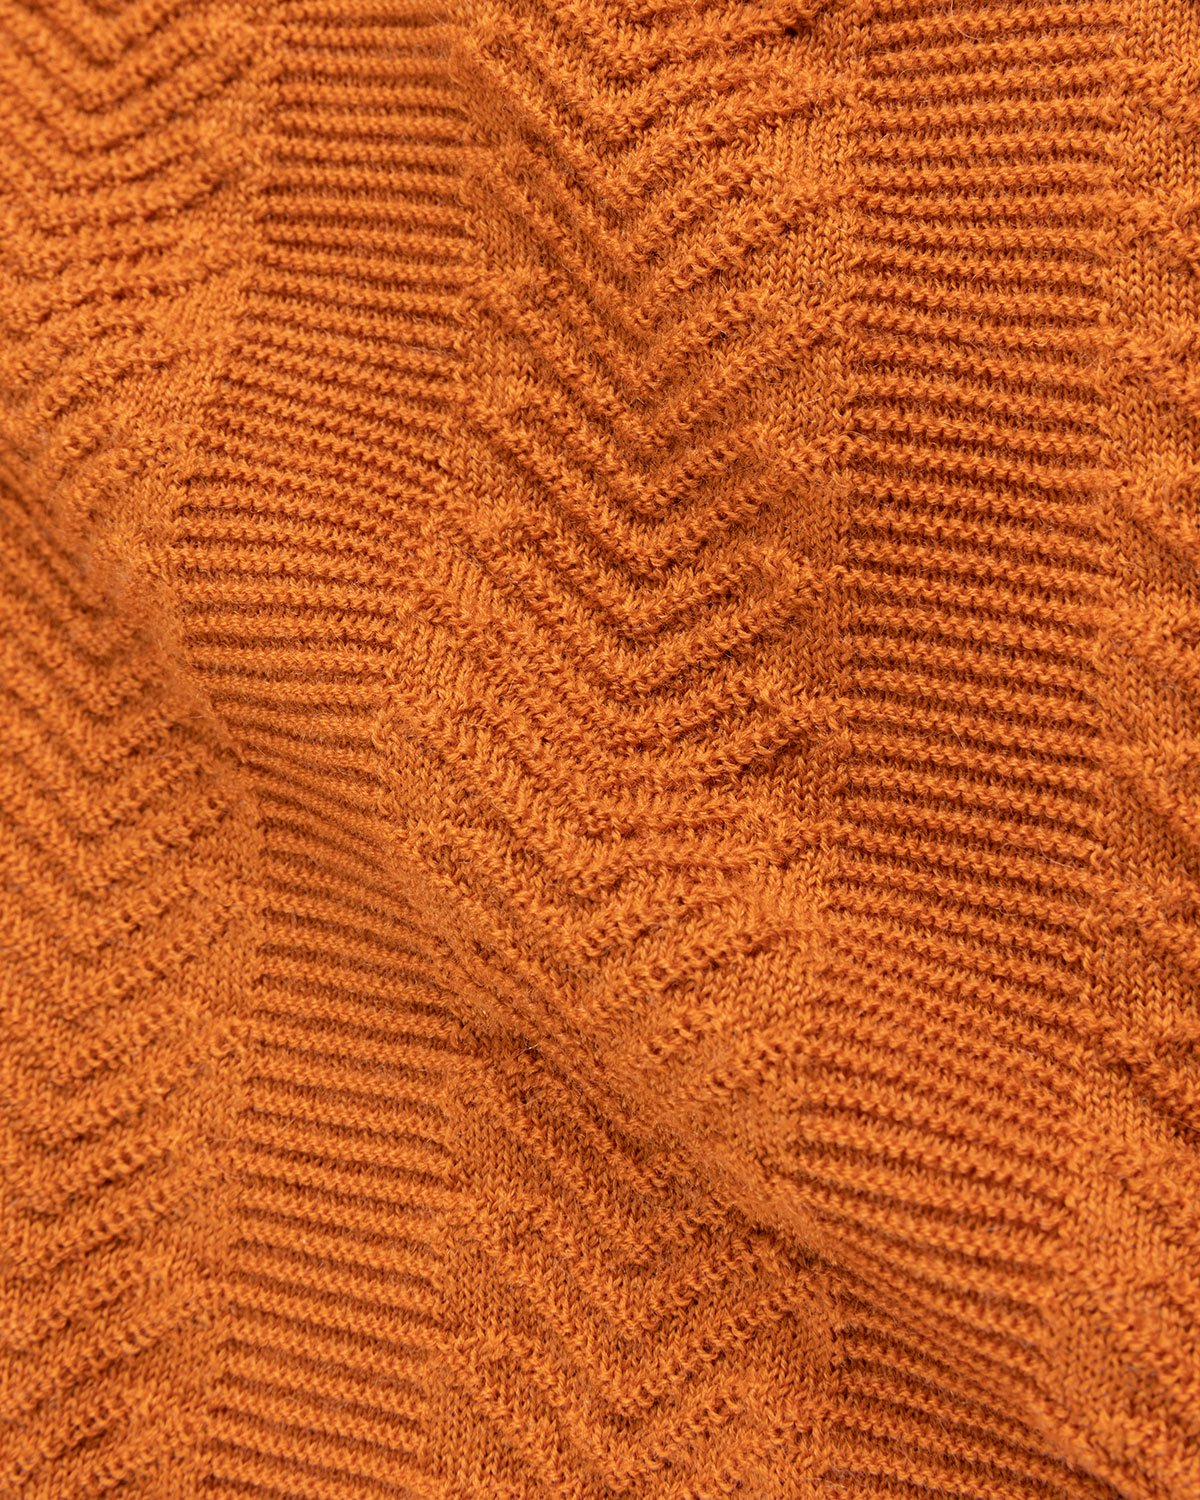 Adidas x Wales Bonner - Knit Longsleeve - Clothing - Orange - Image 5